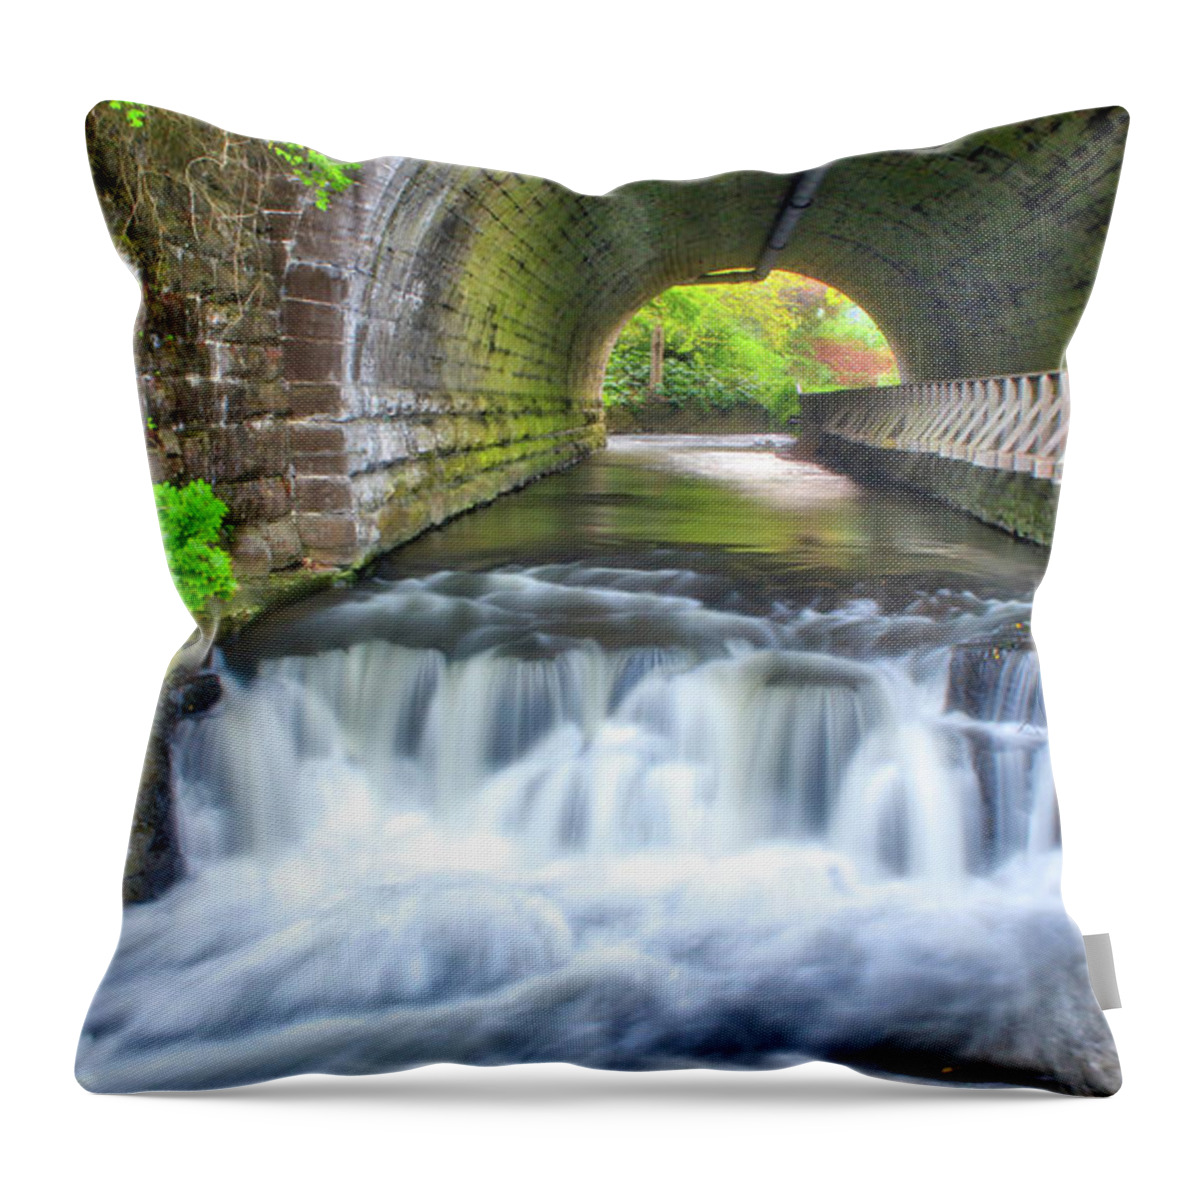 Nunweiler Throw Pillow featuring the photograph Corbett's Glen Tunnel by Nunweiler Photography